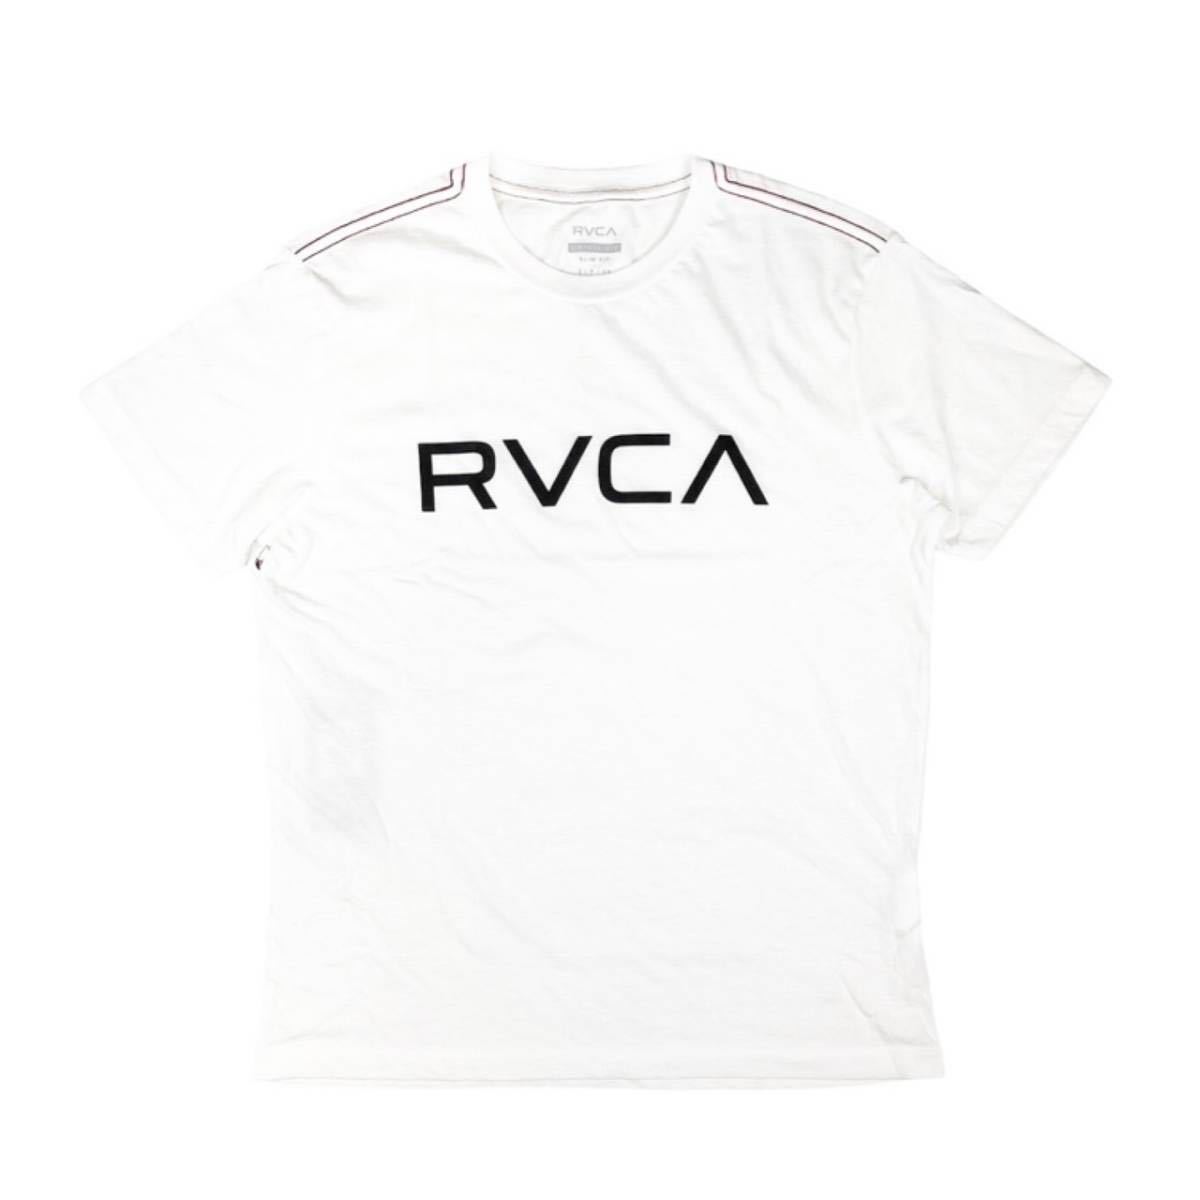 ルーカ RVCA 半袖Tシャツ M420VRBI メンズ レディース ロゴ トップス クルーネック 丸首 白 Sサイズ カジュアル BIG RVCA SS TEE 新品